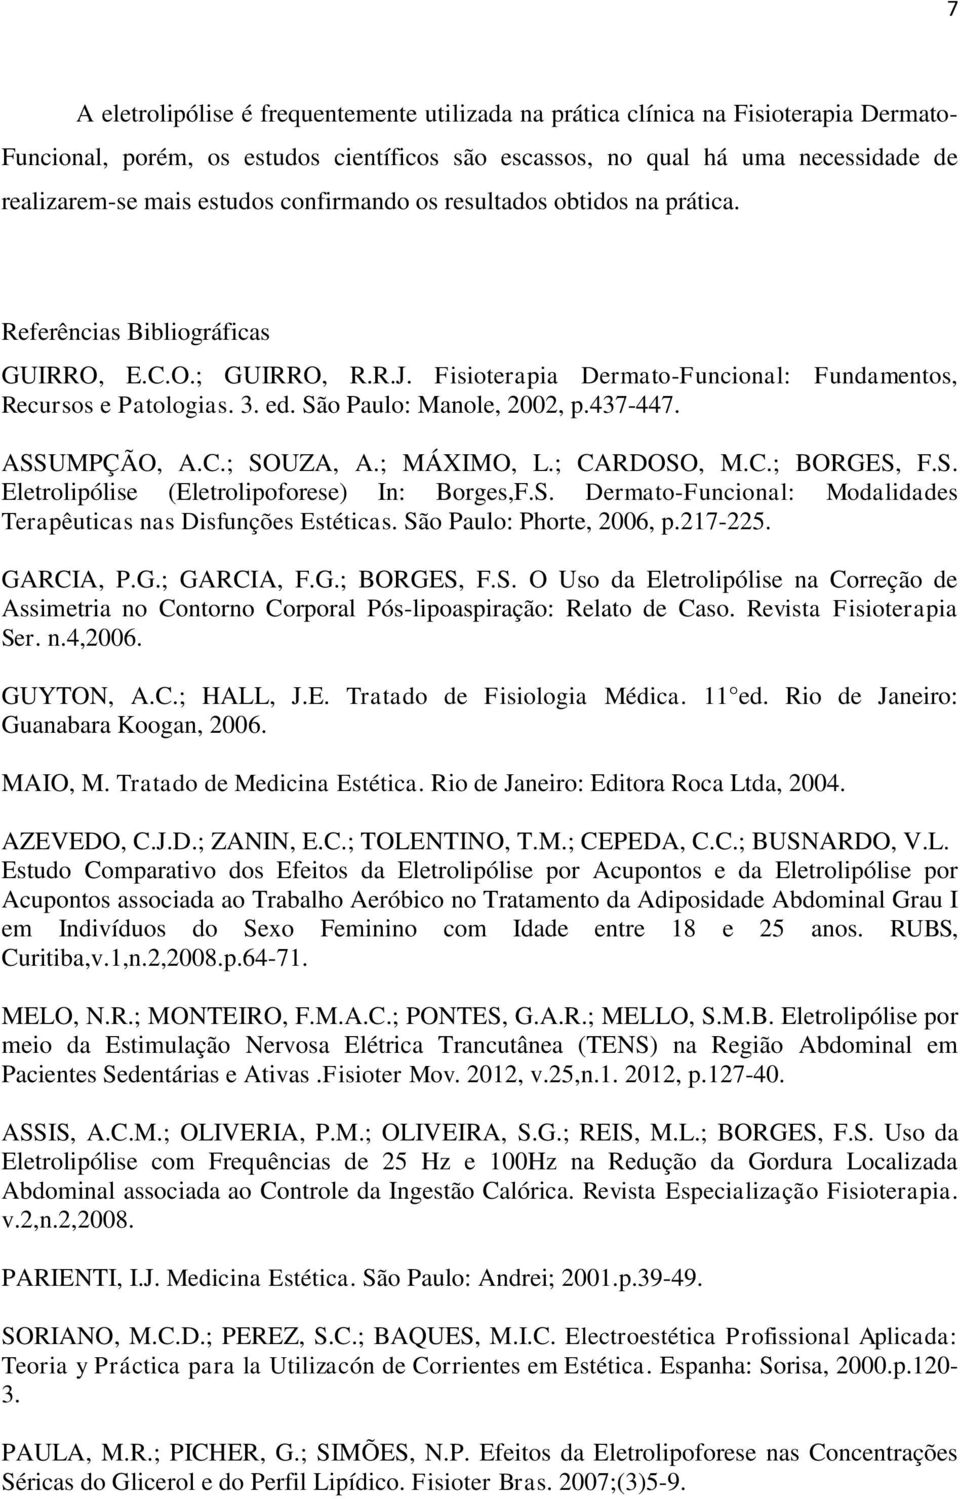 São Paulo: Manole, 2002, p.437-447. ASSUMPÇÃO, A.C.; SOUZA, A.; MÁXIMO, L.; CARDOSO, M.C.; BORGES, F.S. Eletrolipólise (Eletrolipoforese) In: Borges,F.S. Dermato-Funcional: Modalidades Terapêuticas nas Disfunções Estéticas.